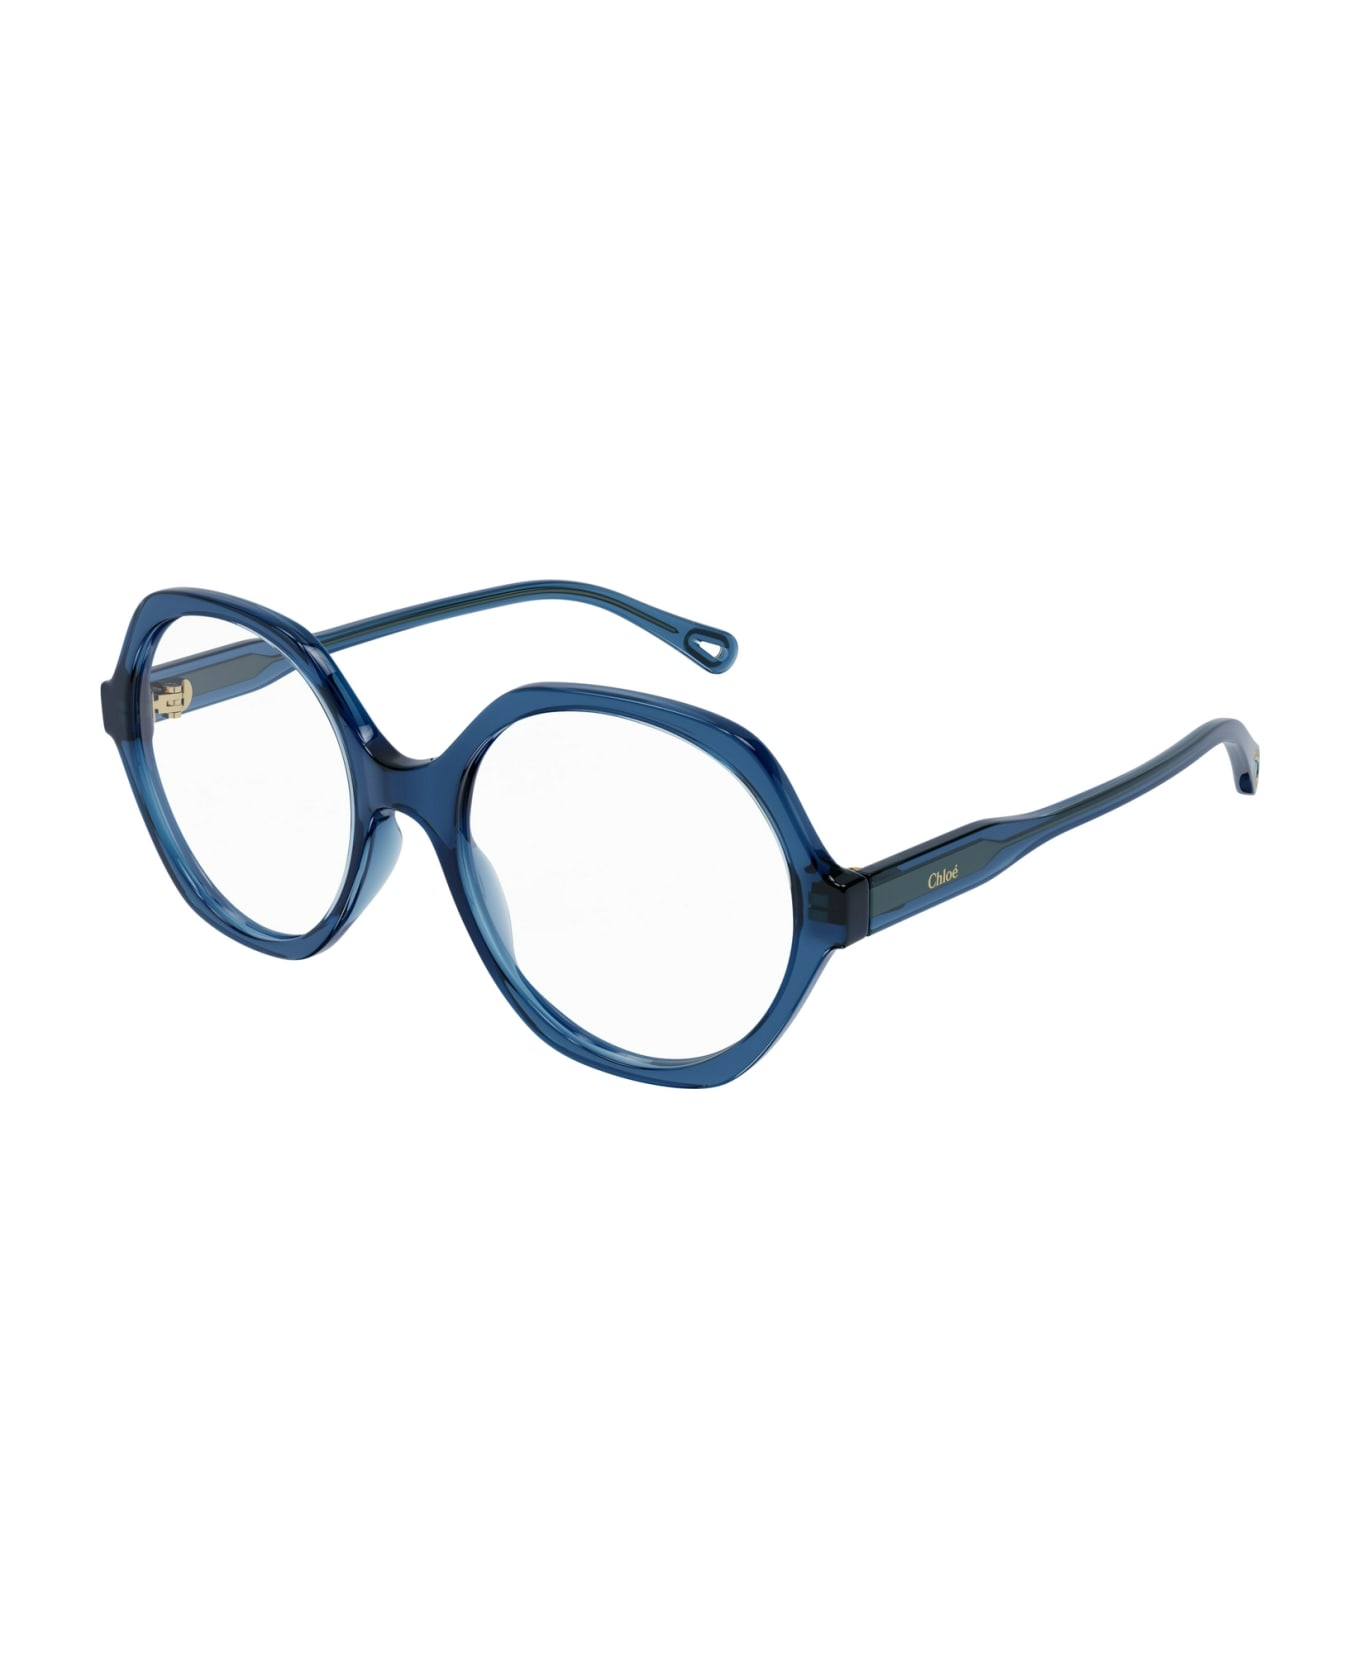 Chloé Eyewear Ch0083o Blue Glasses - Blue